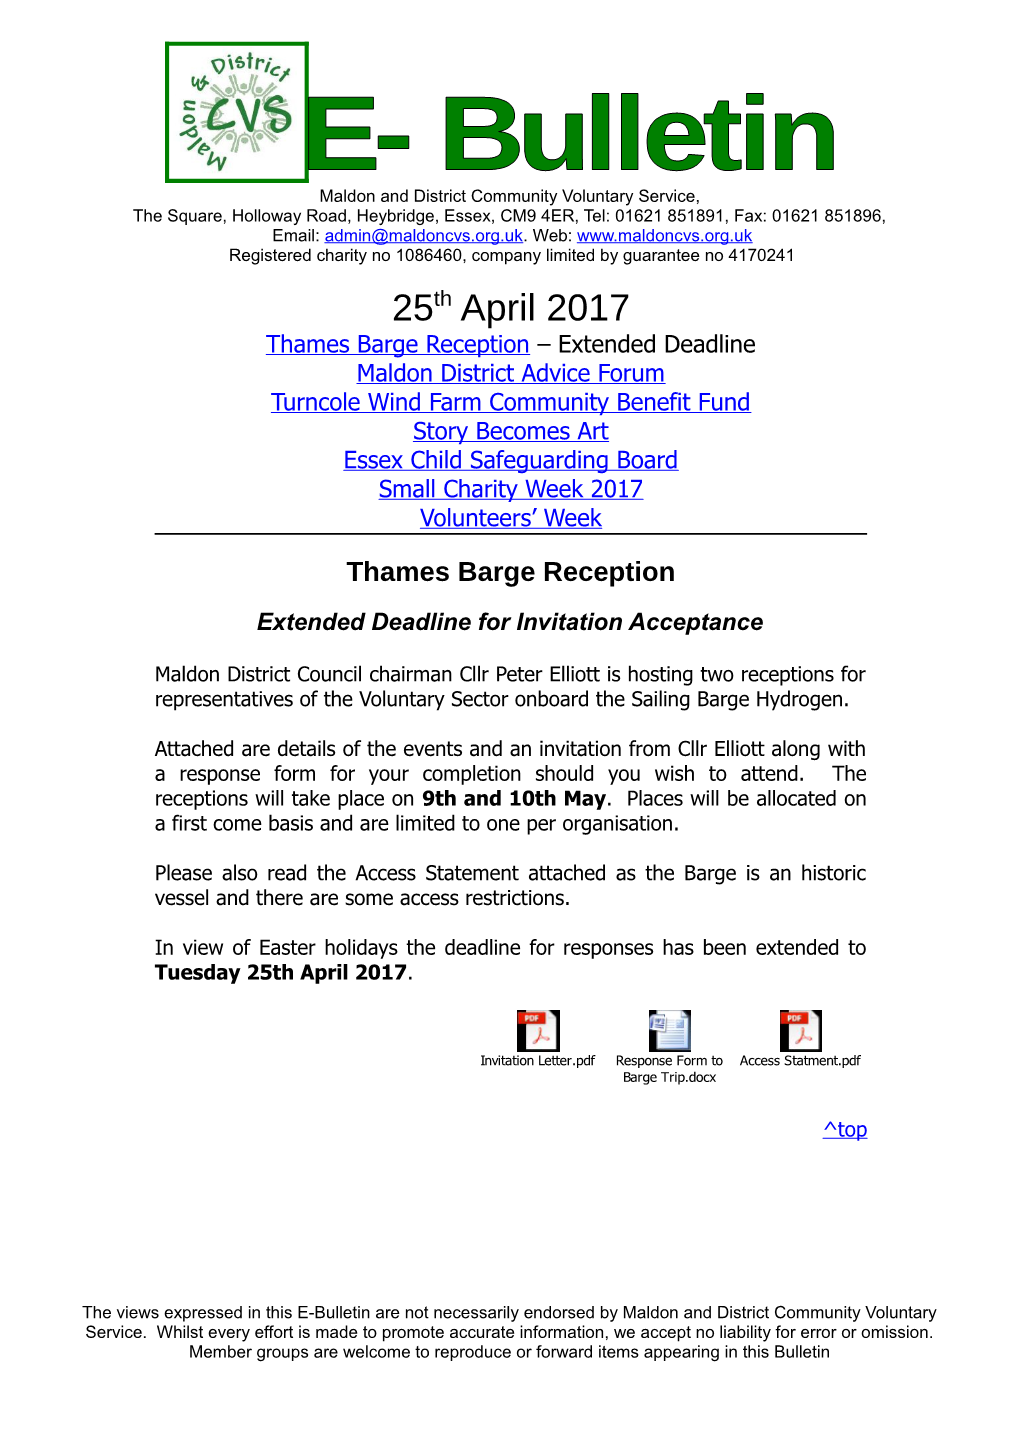 Thames Barge Reception Extended Deadline